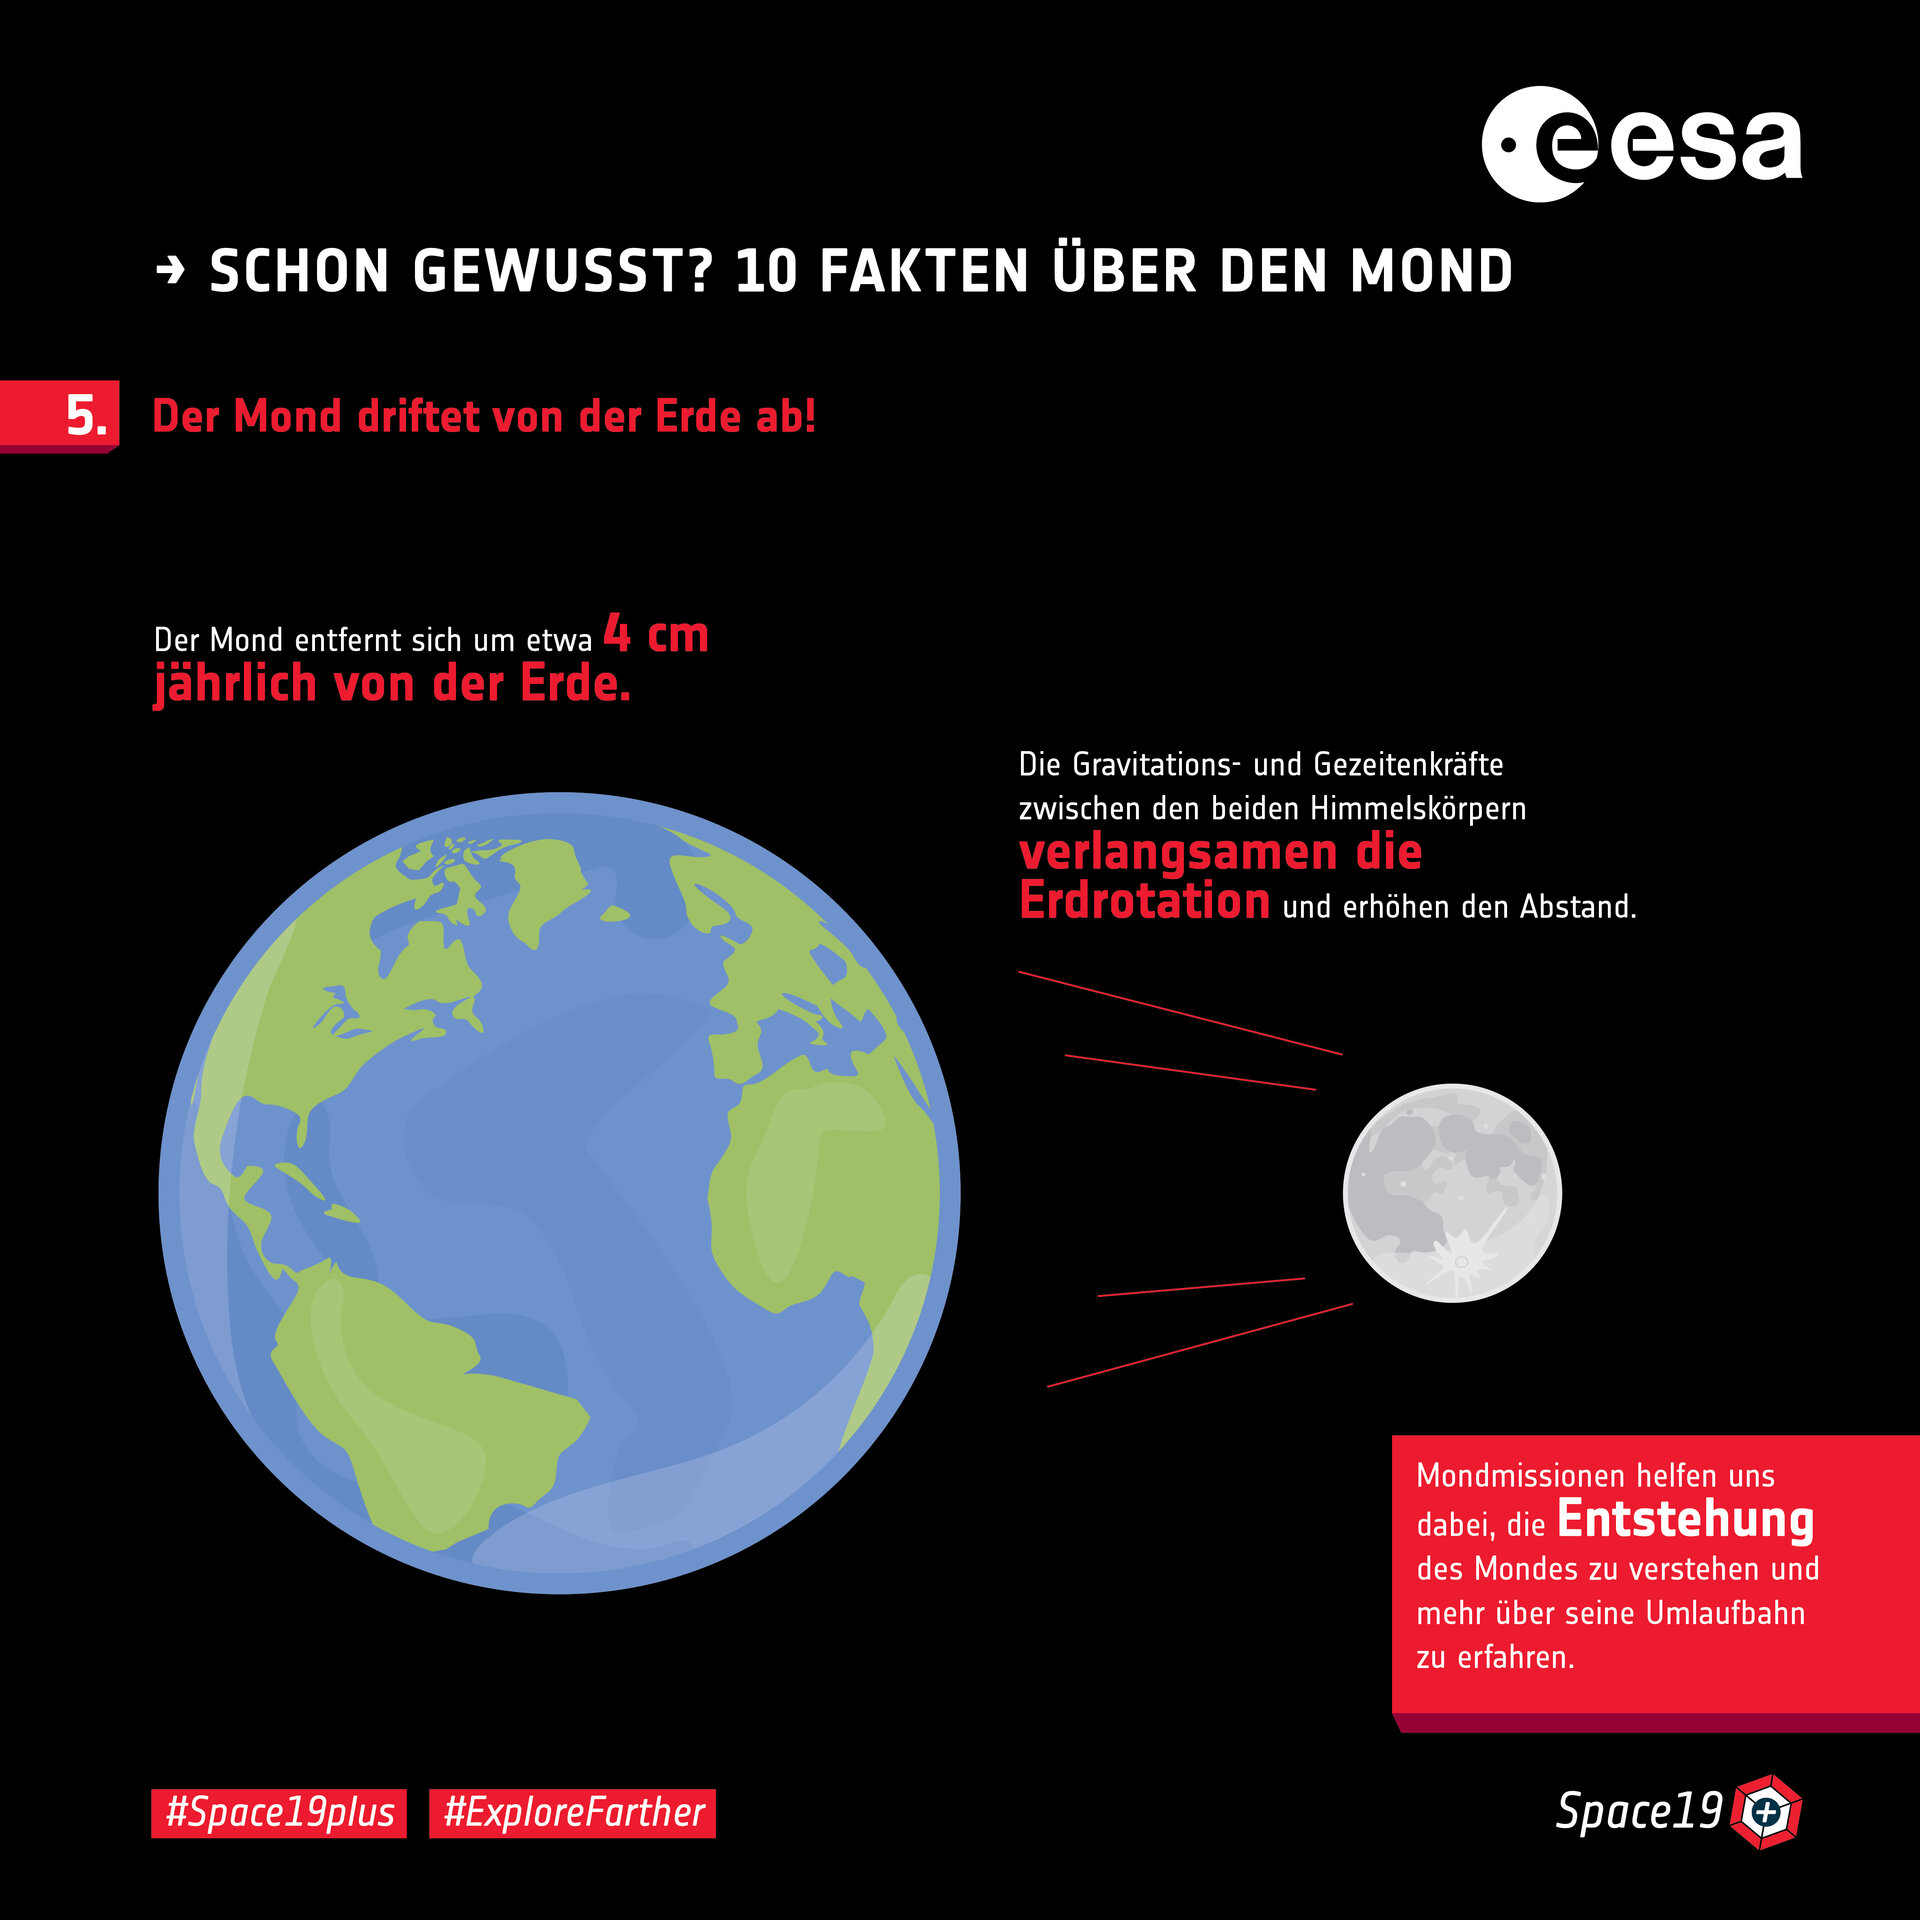 Schon gewusst? 10 Fakten über den Mond: 5. Der Mond driftet von der Erde ab!